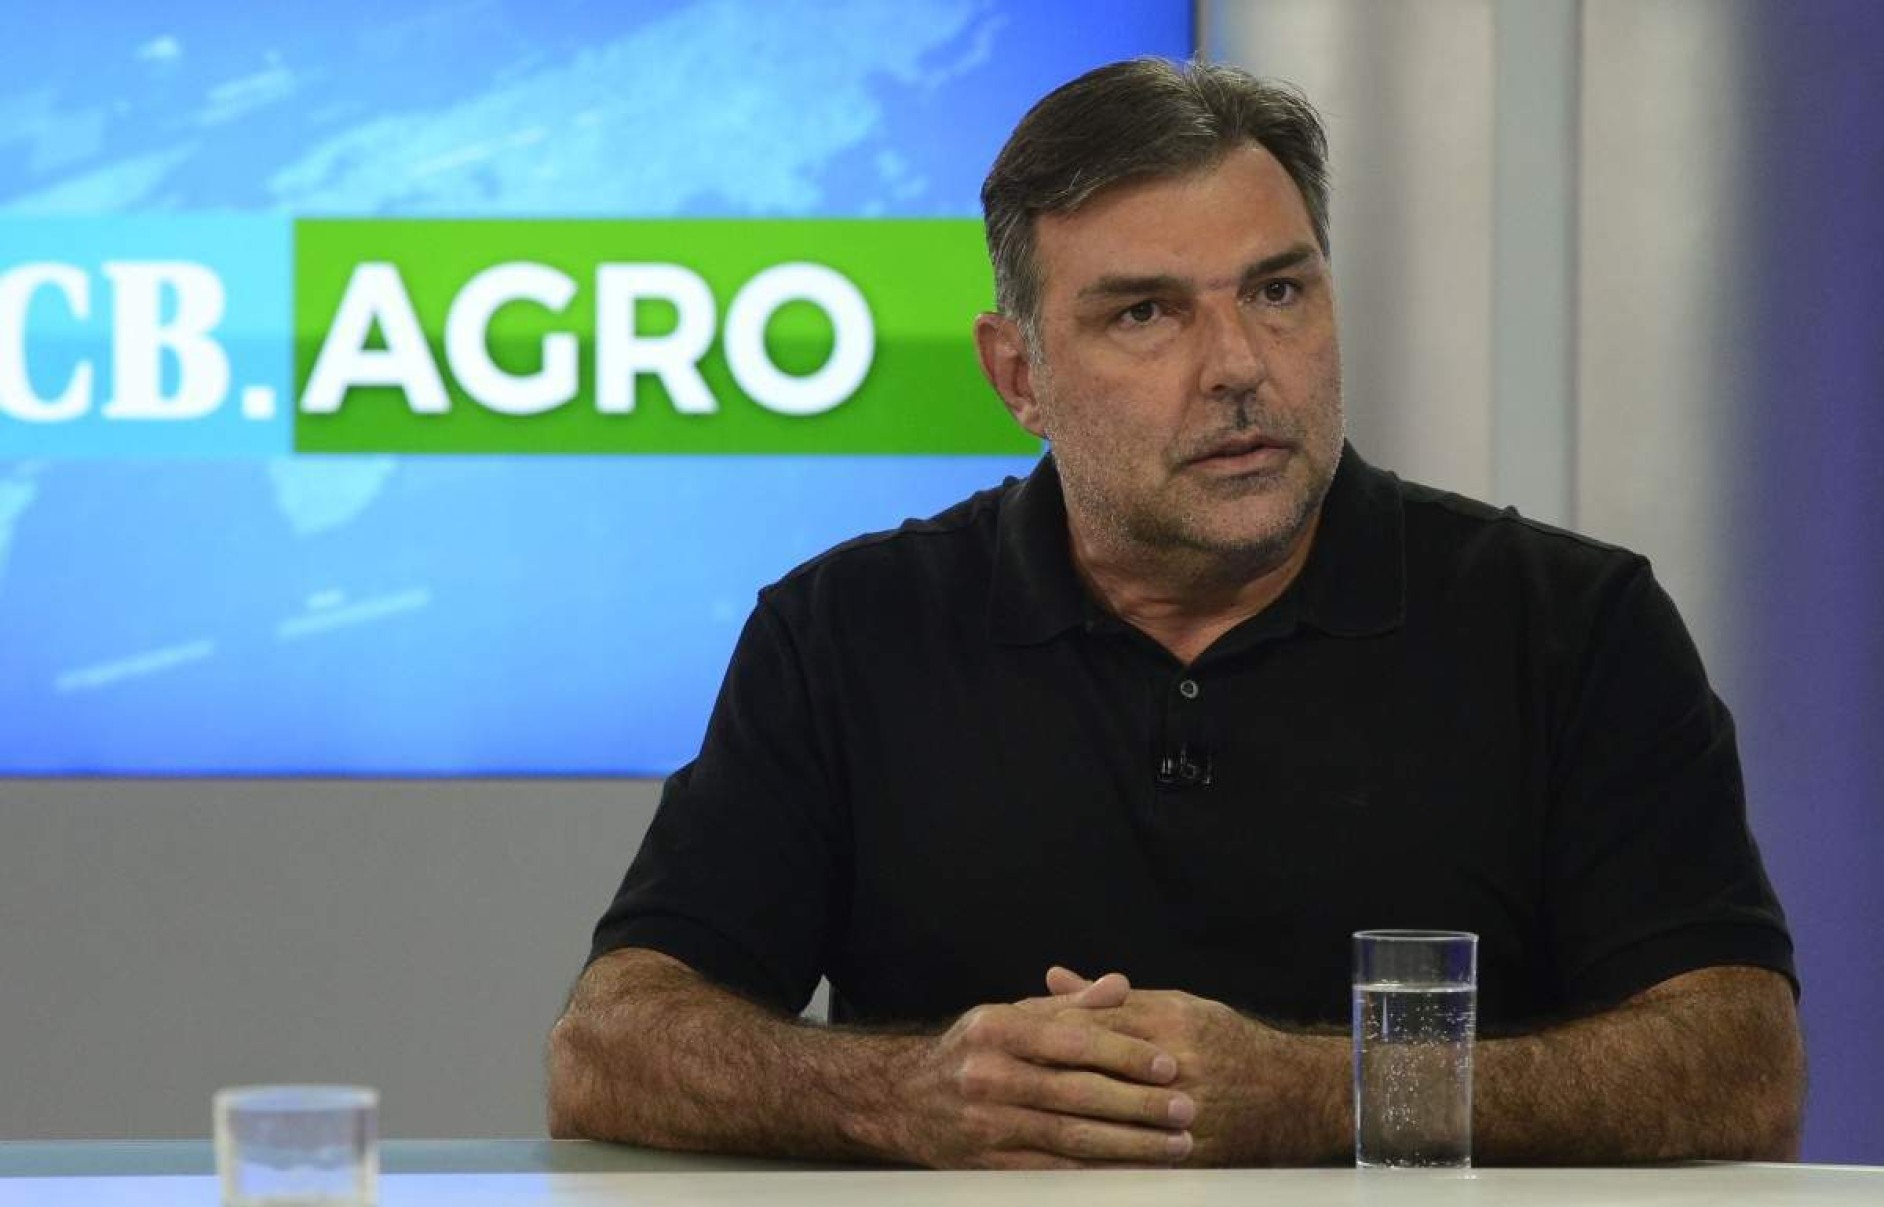 Presidente da Anapa diz que importação de alho prejudica brasileiros